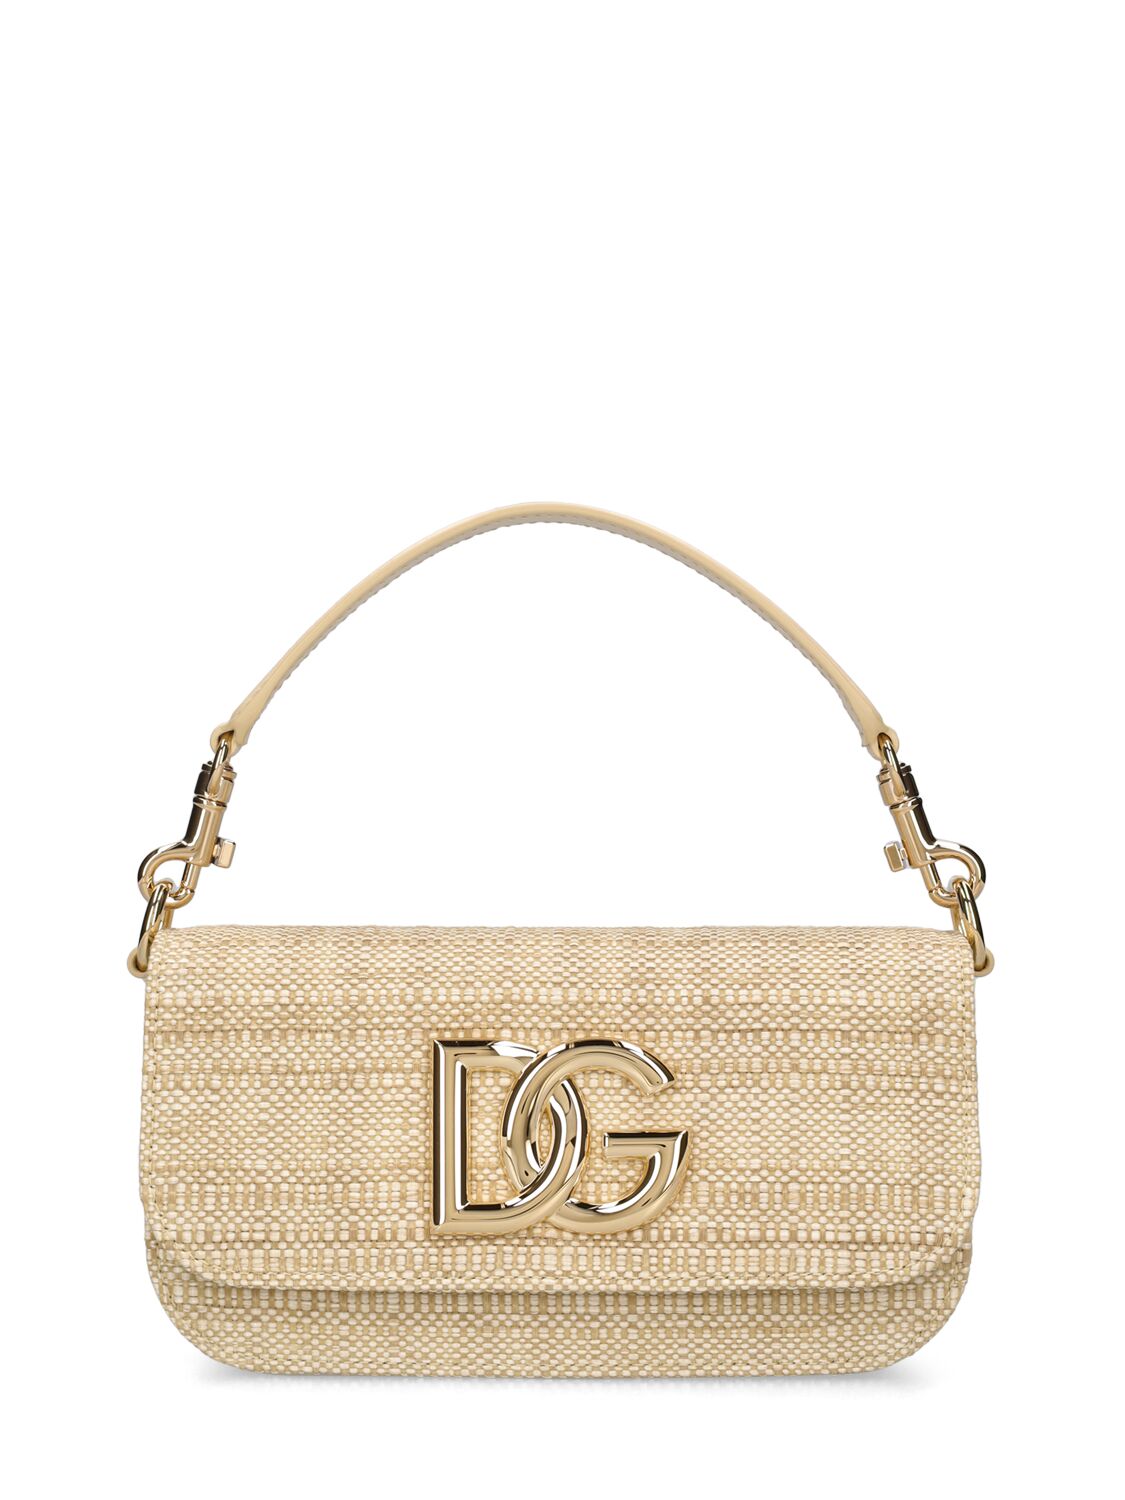 Dolce & Gabbana 3.5 Raffia Top Handle Bag In Sand